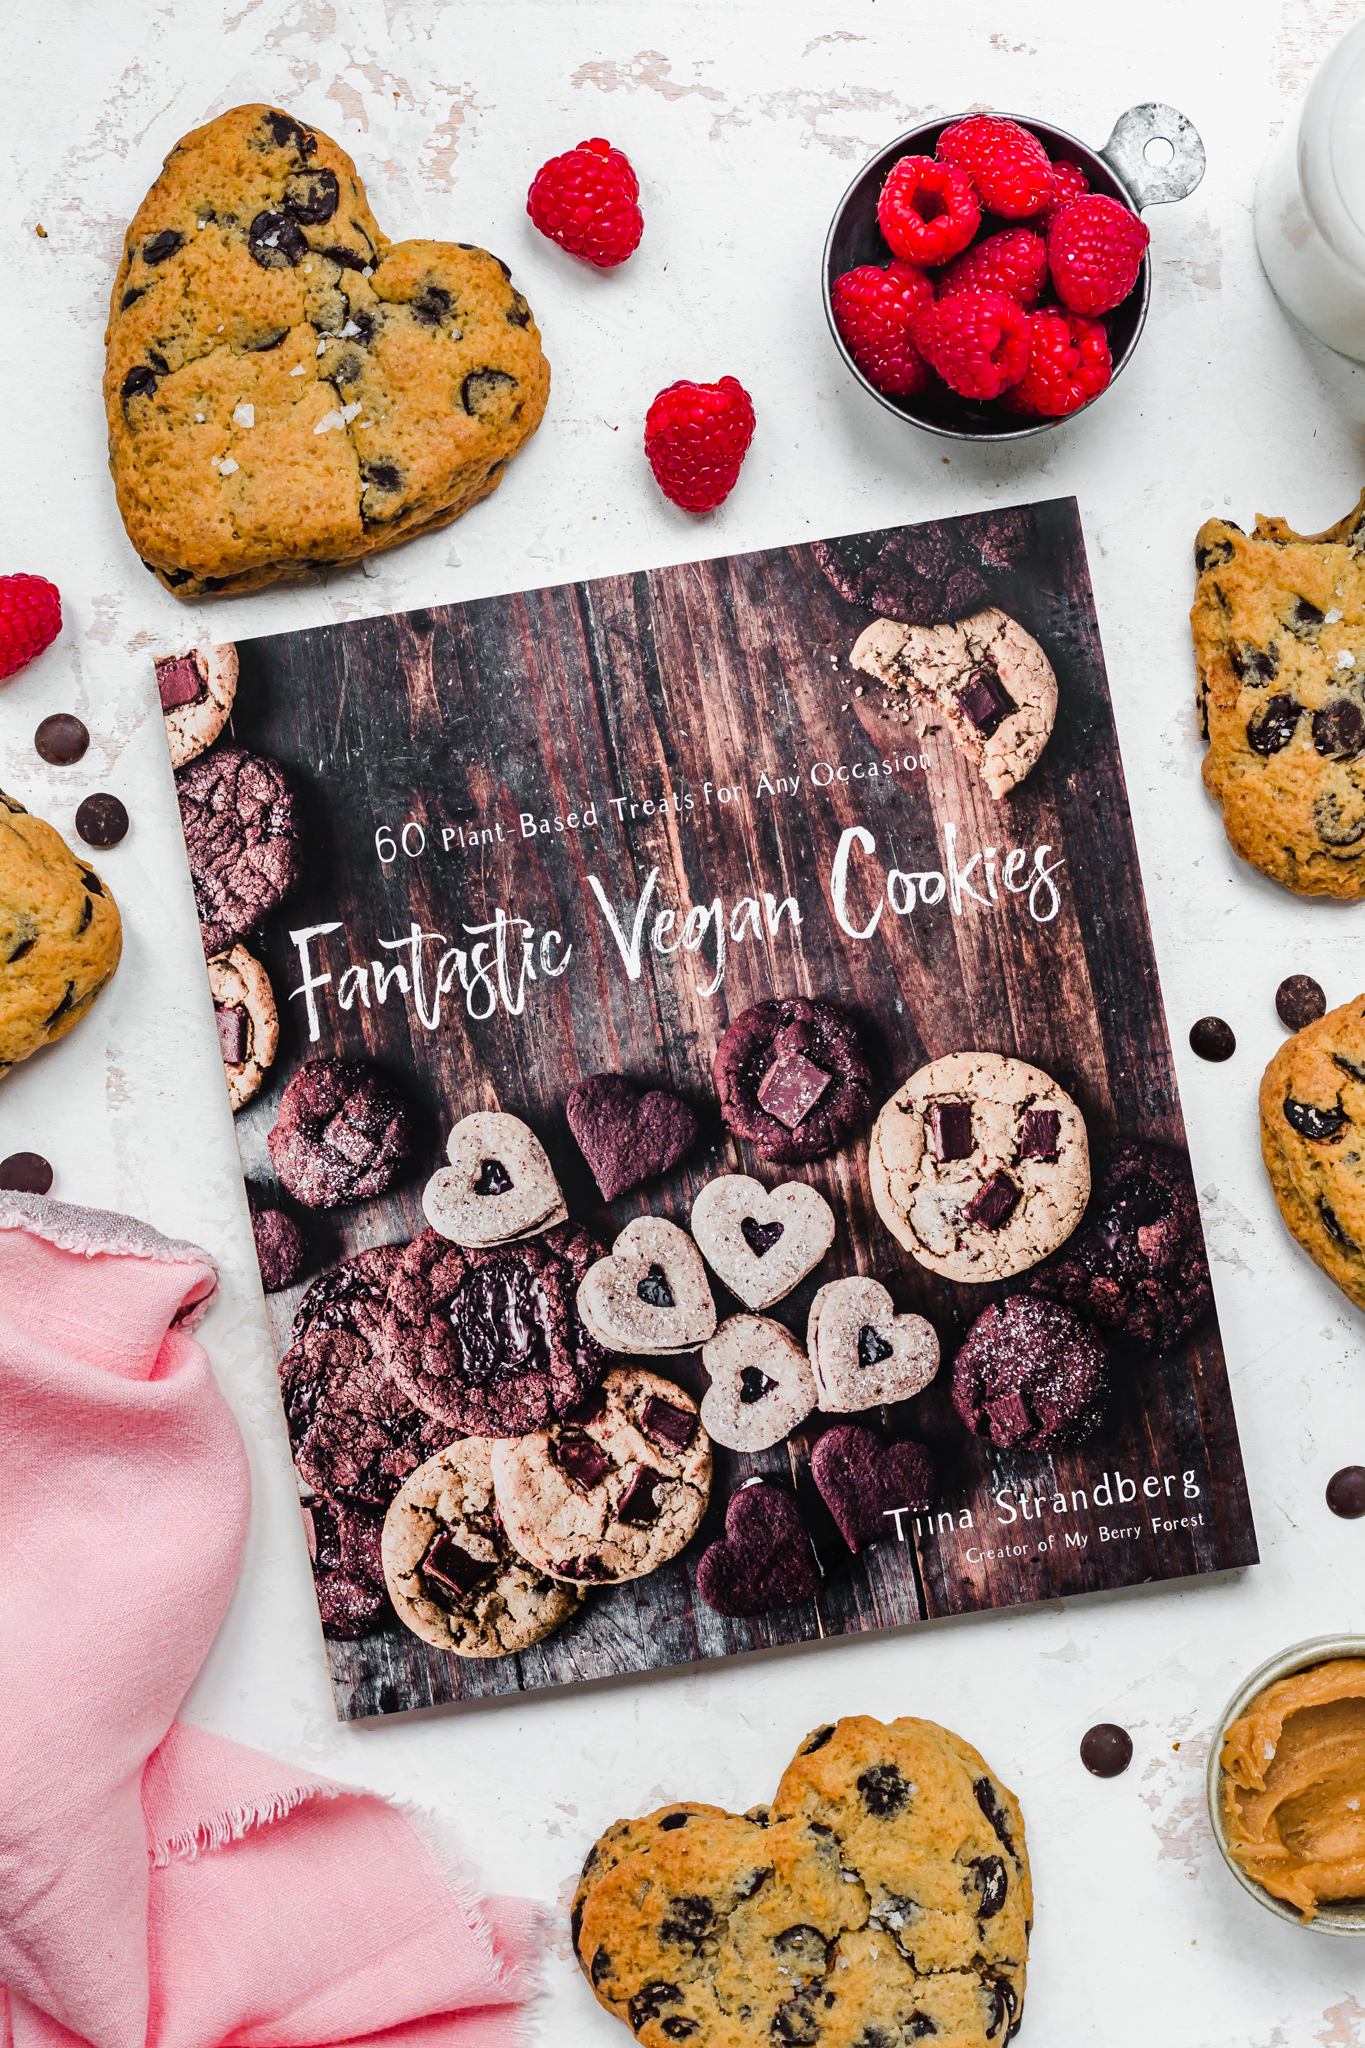 Fantastic Vegan Cookies, Tiina Strandberg book